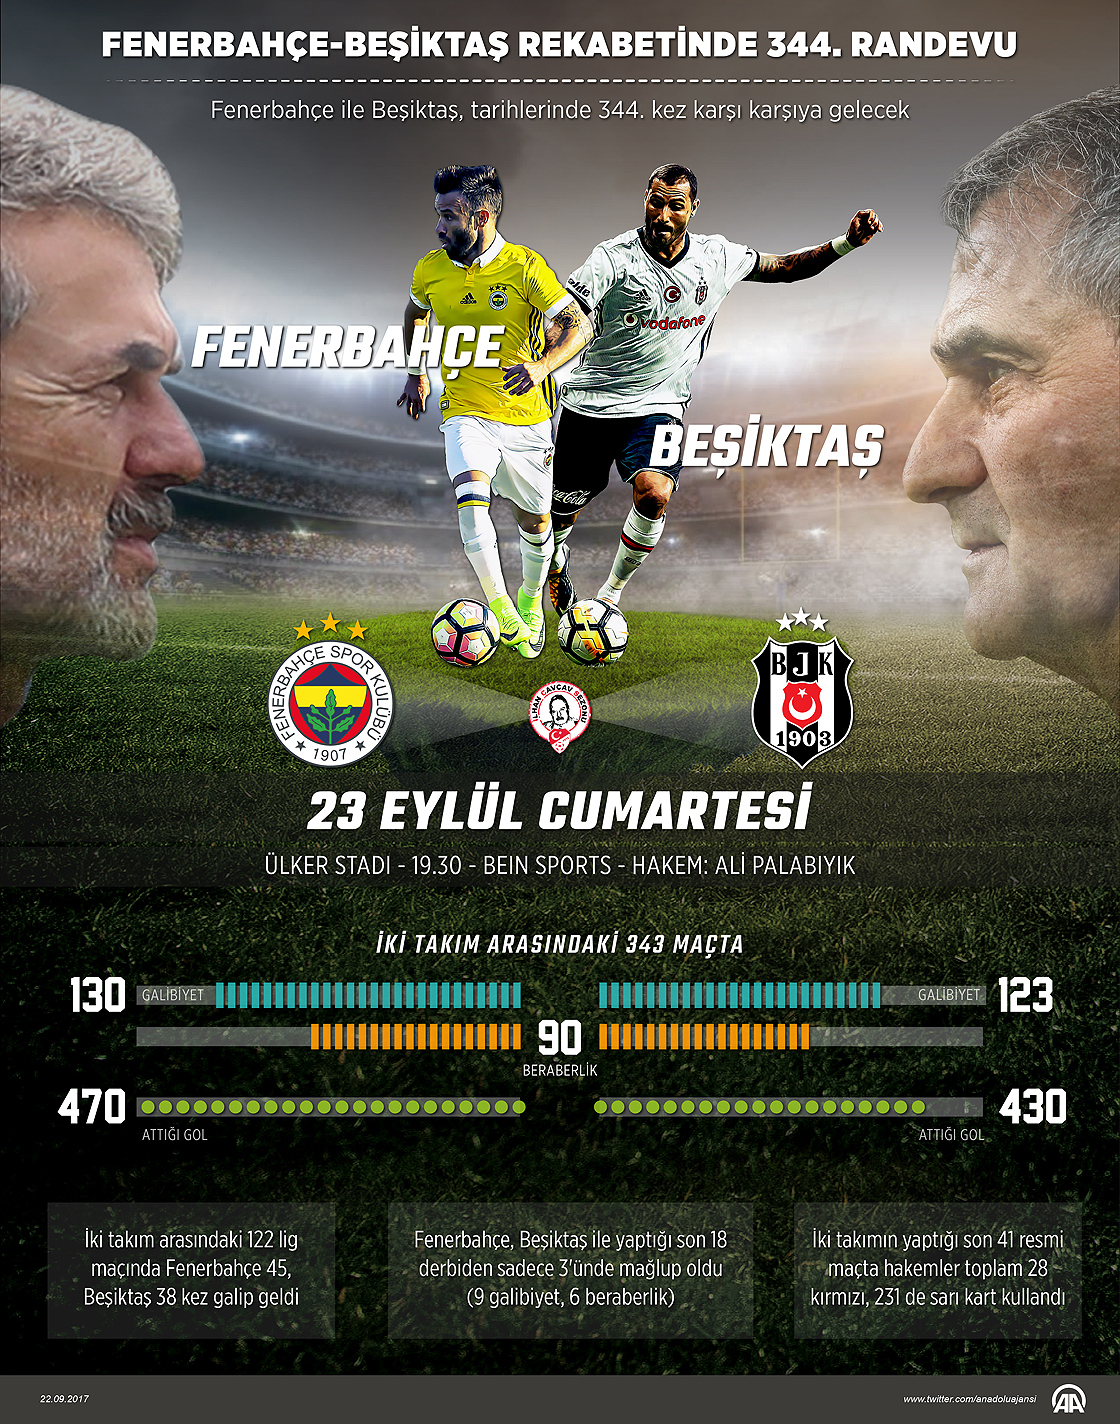 Fenerbahçe-Beşiktaş rekabetinde 344. randevu